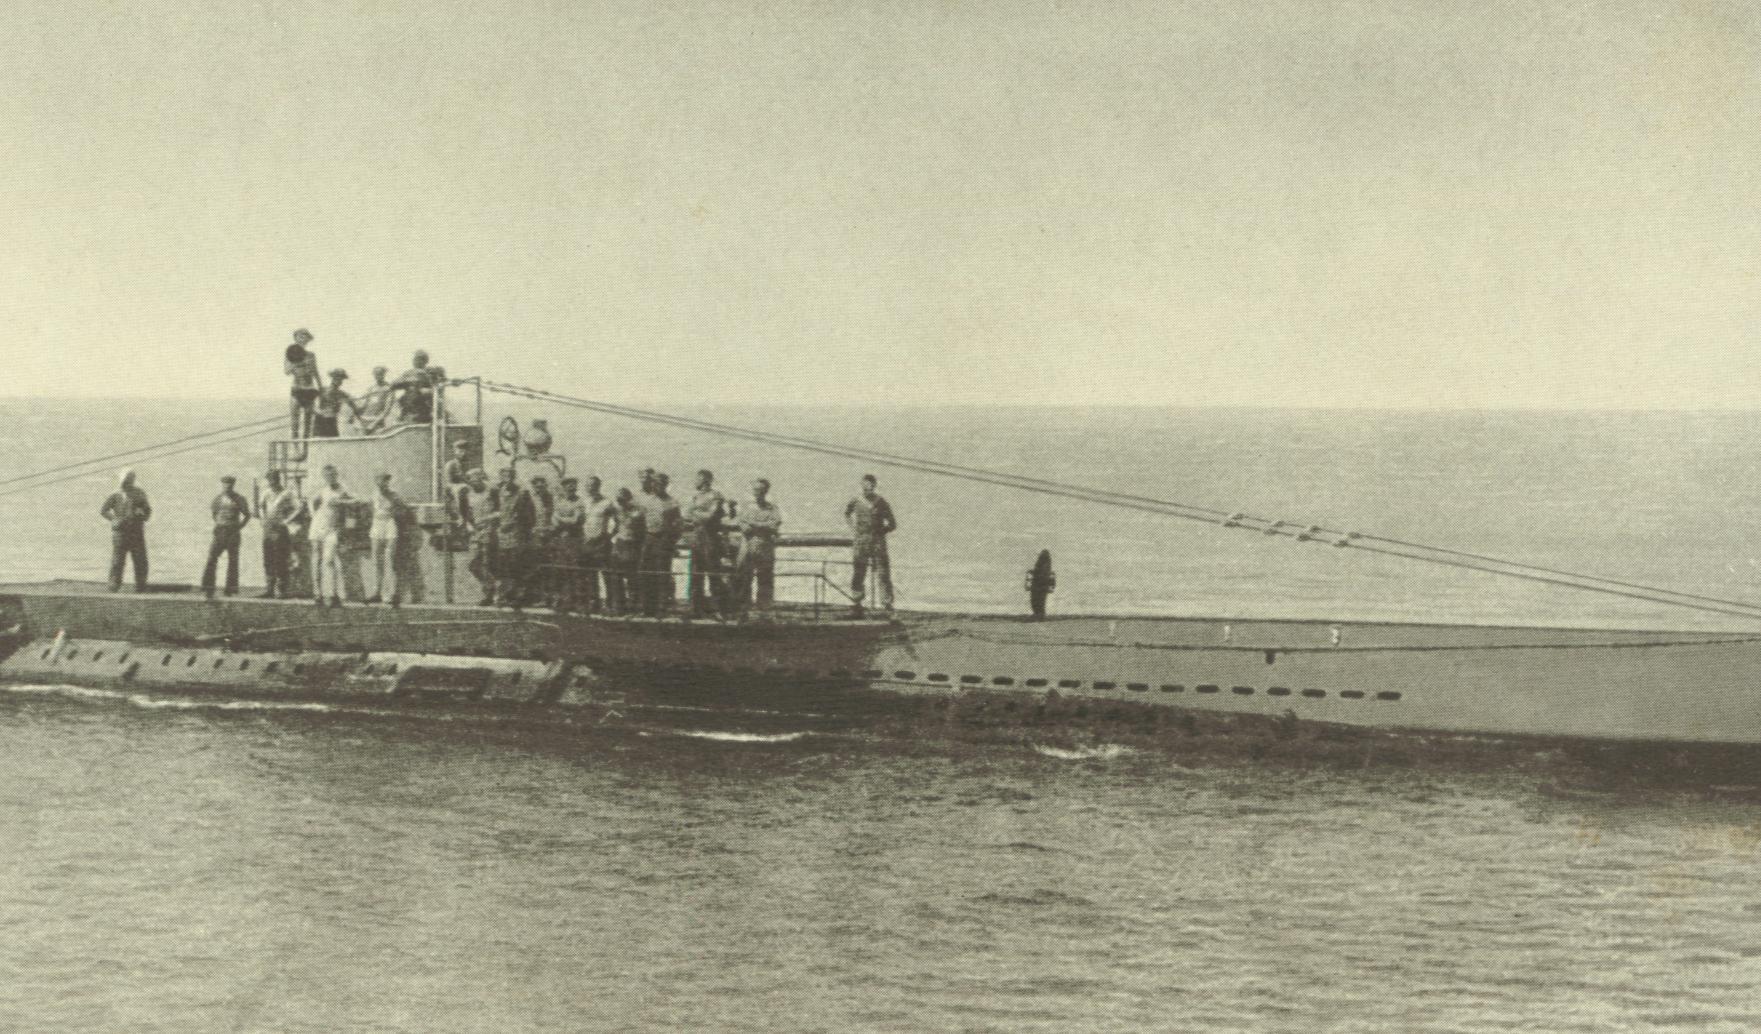 U31型潜水艦 - Wikipedia